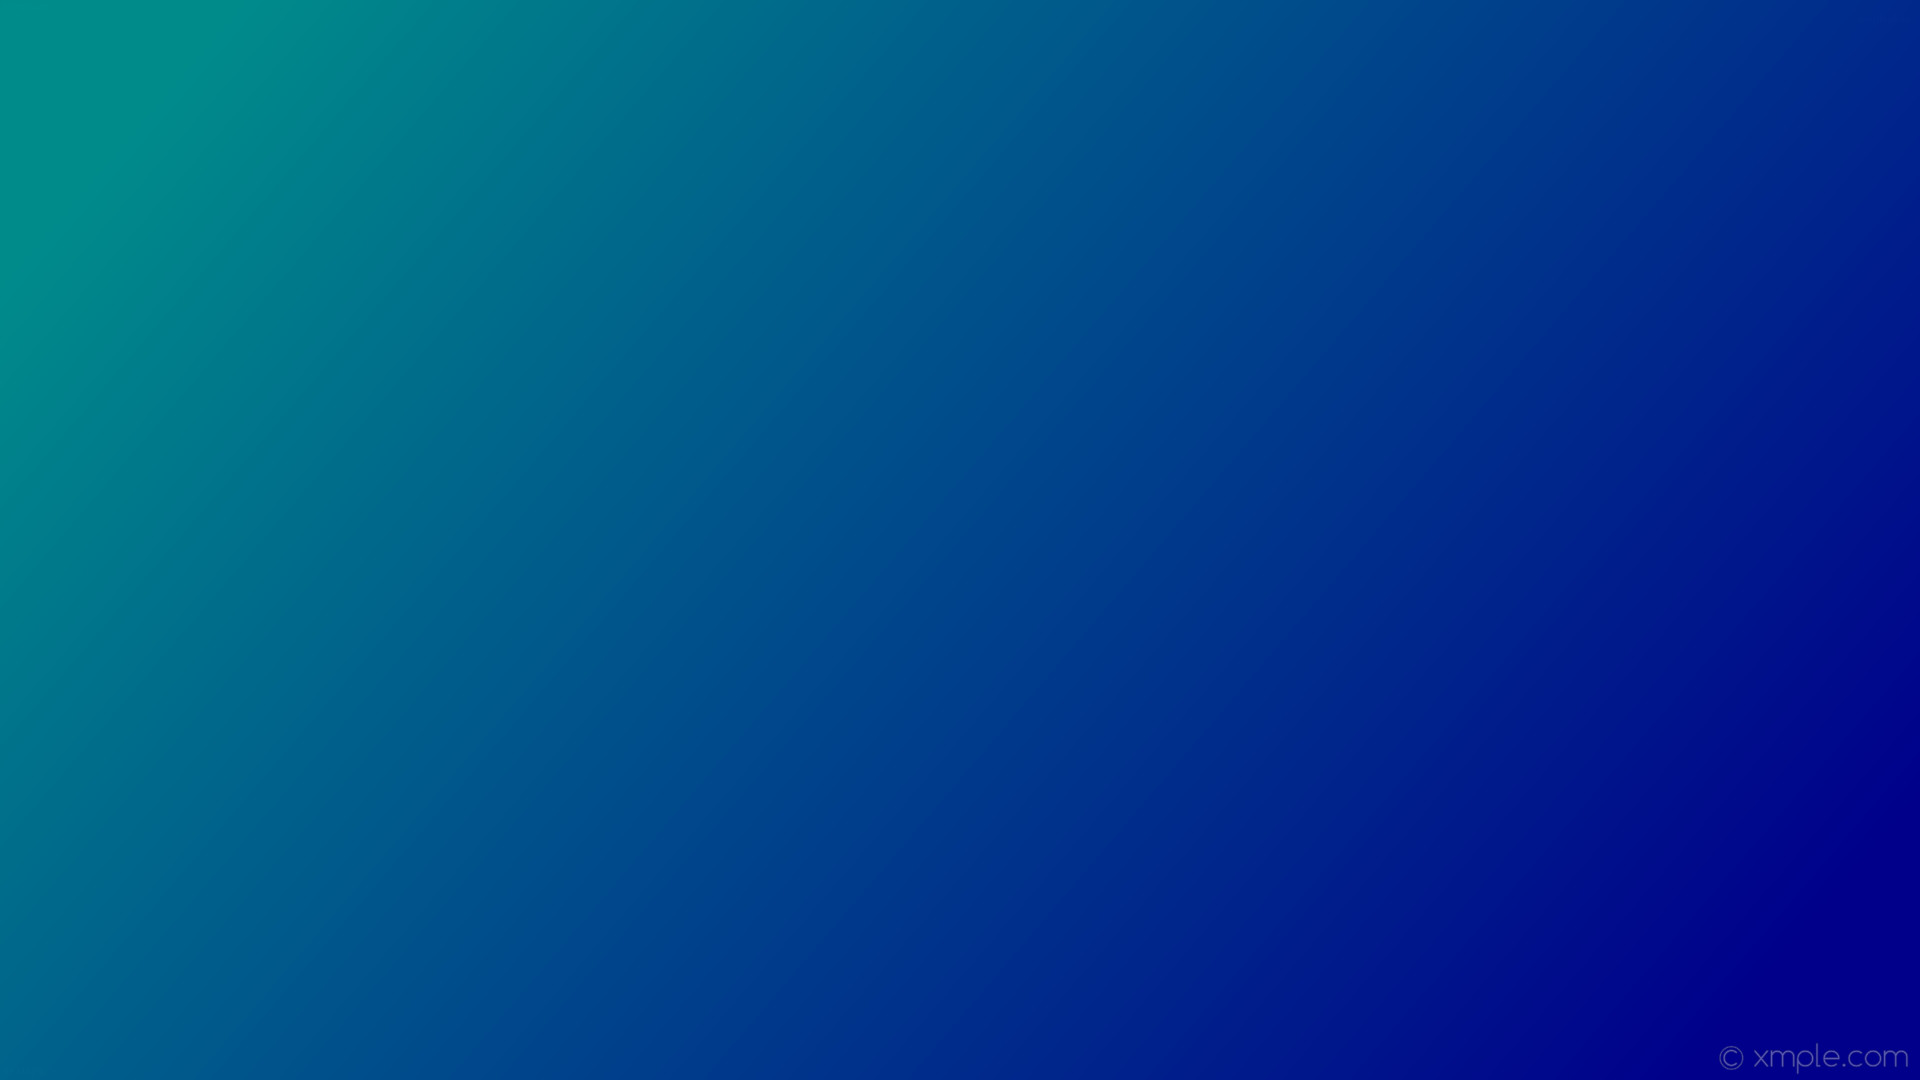 wallpaper green blue gradient linear dark cyan dark blue #008b8b #00008b  165Â°